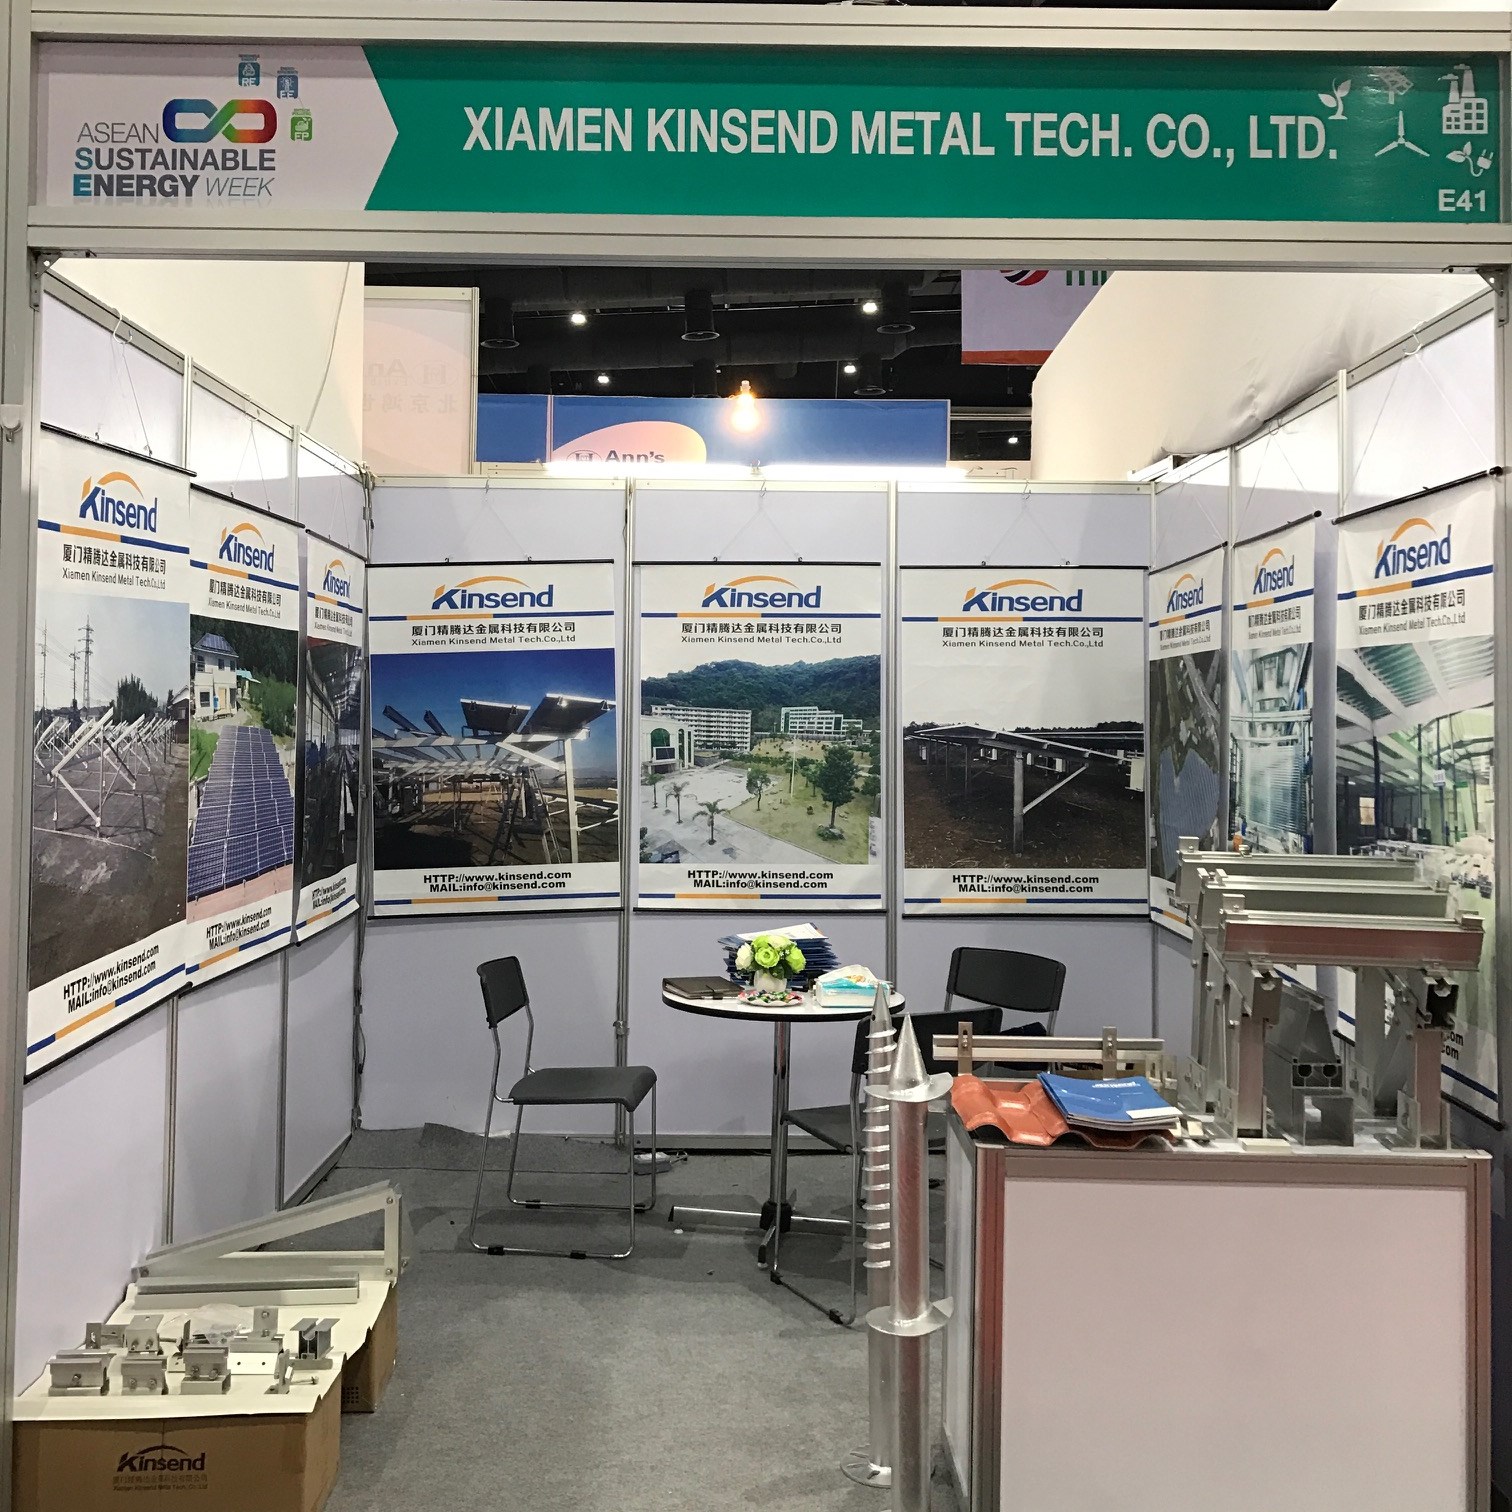 Kinsend exhibited at Renewable Energy Week in Bangkok 2017